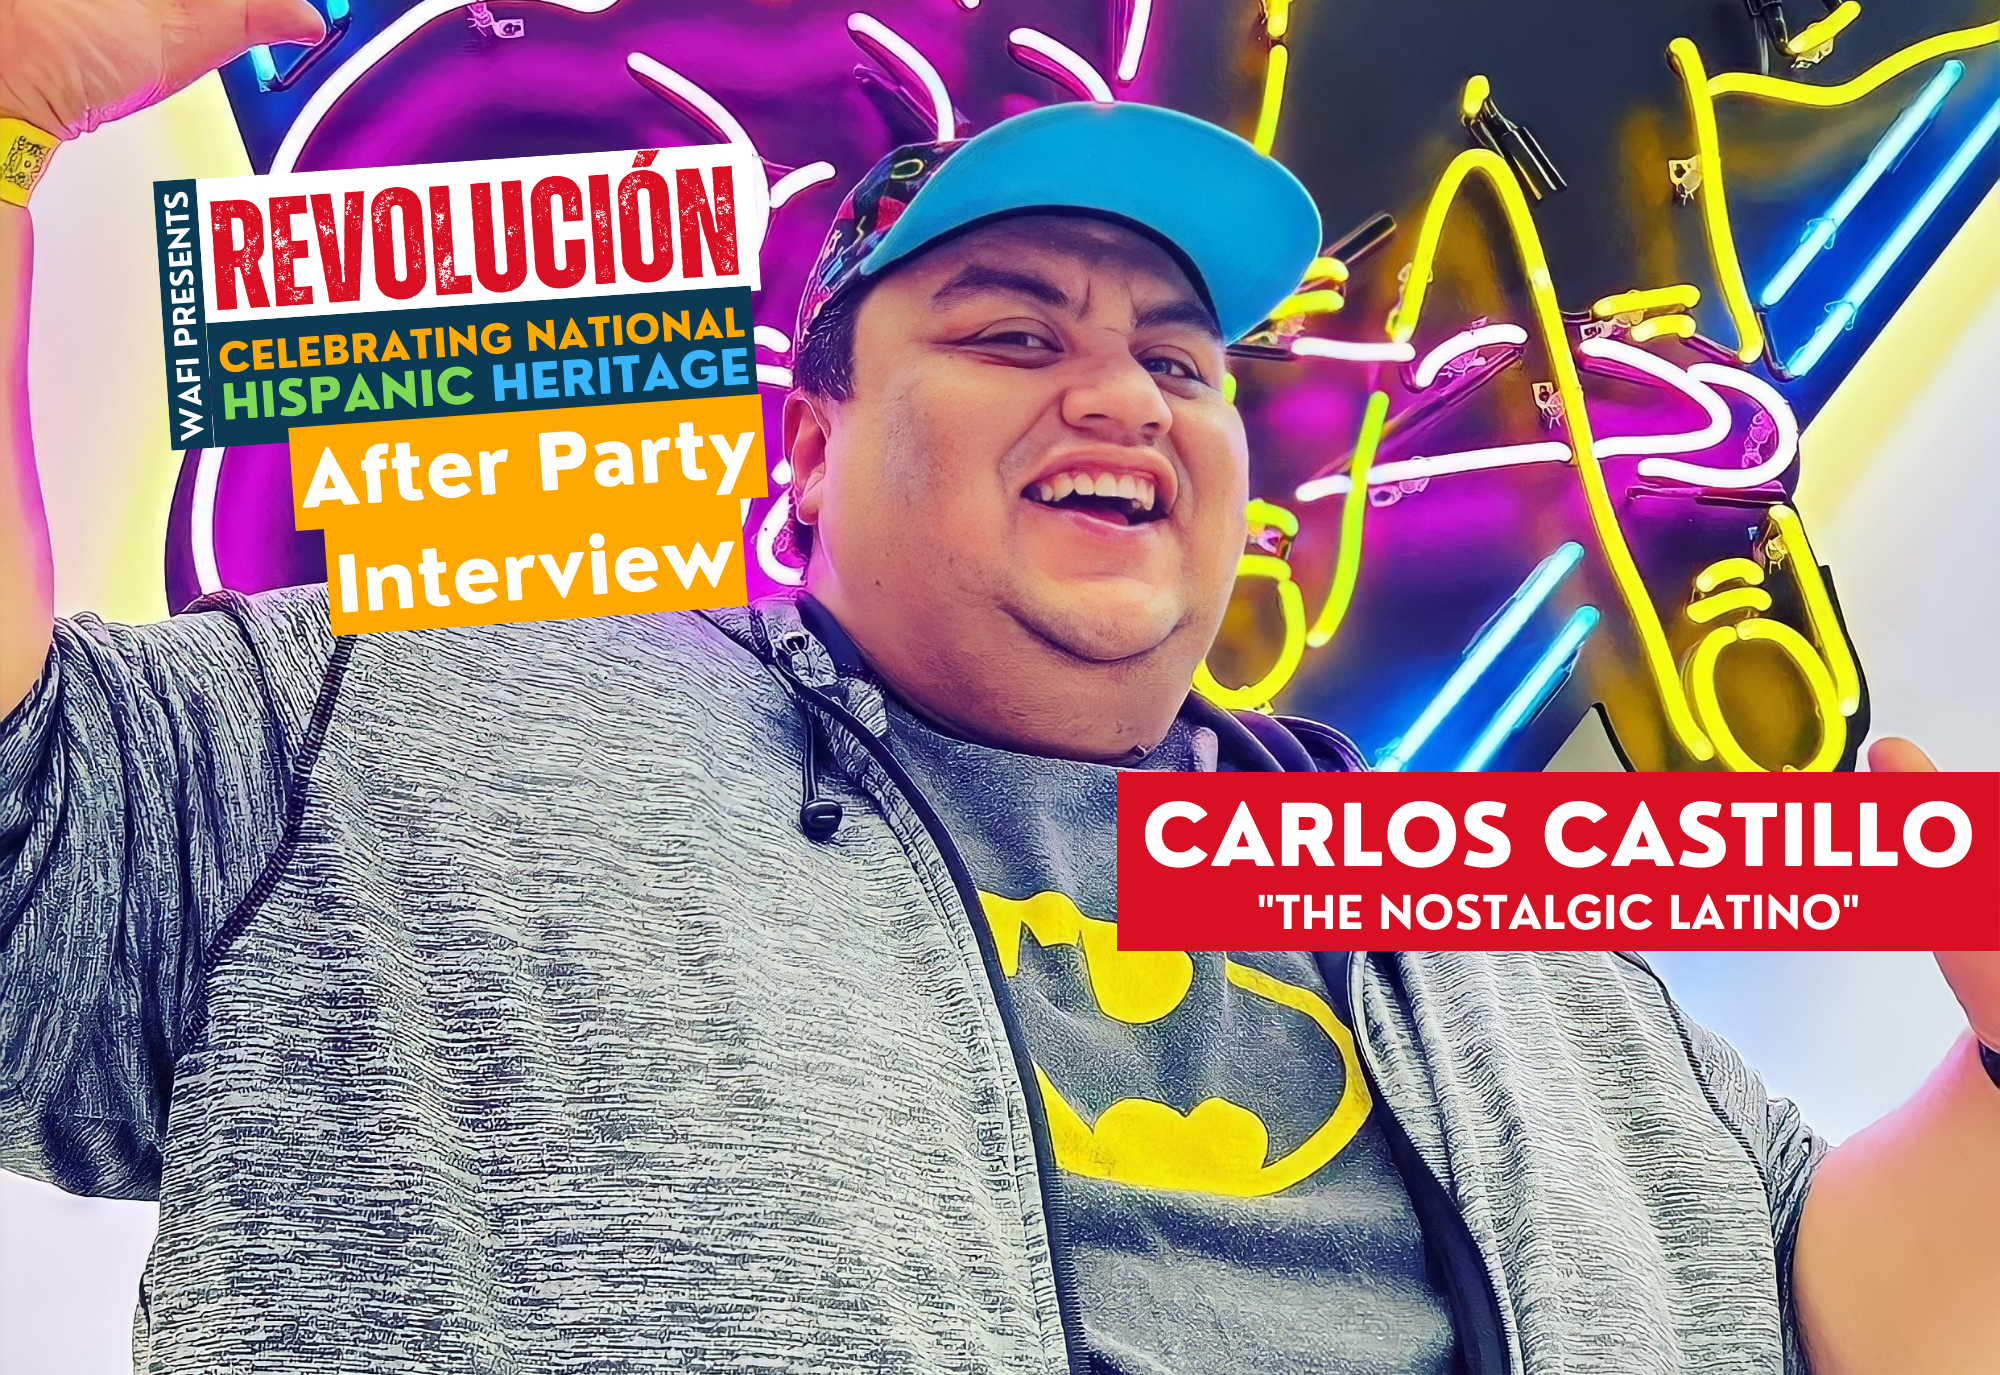 Interview with Carlos Castillo “The Nostalgic Latino”